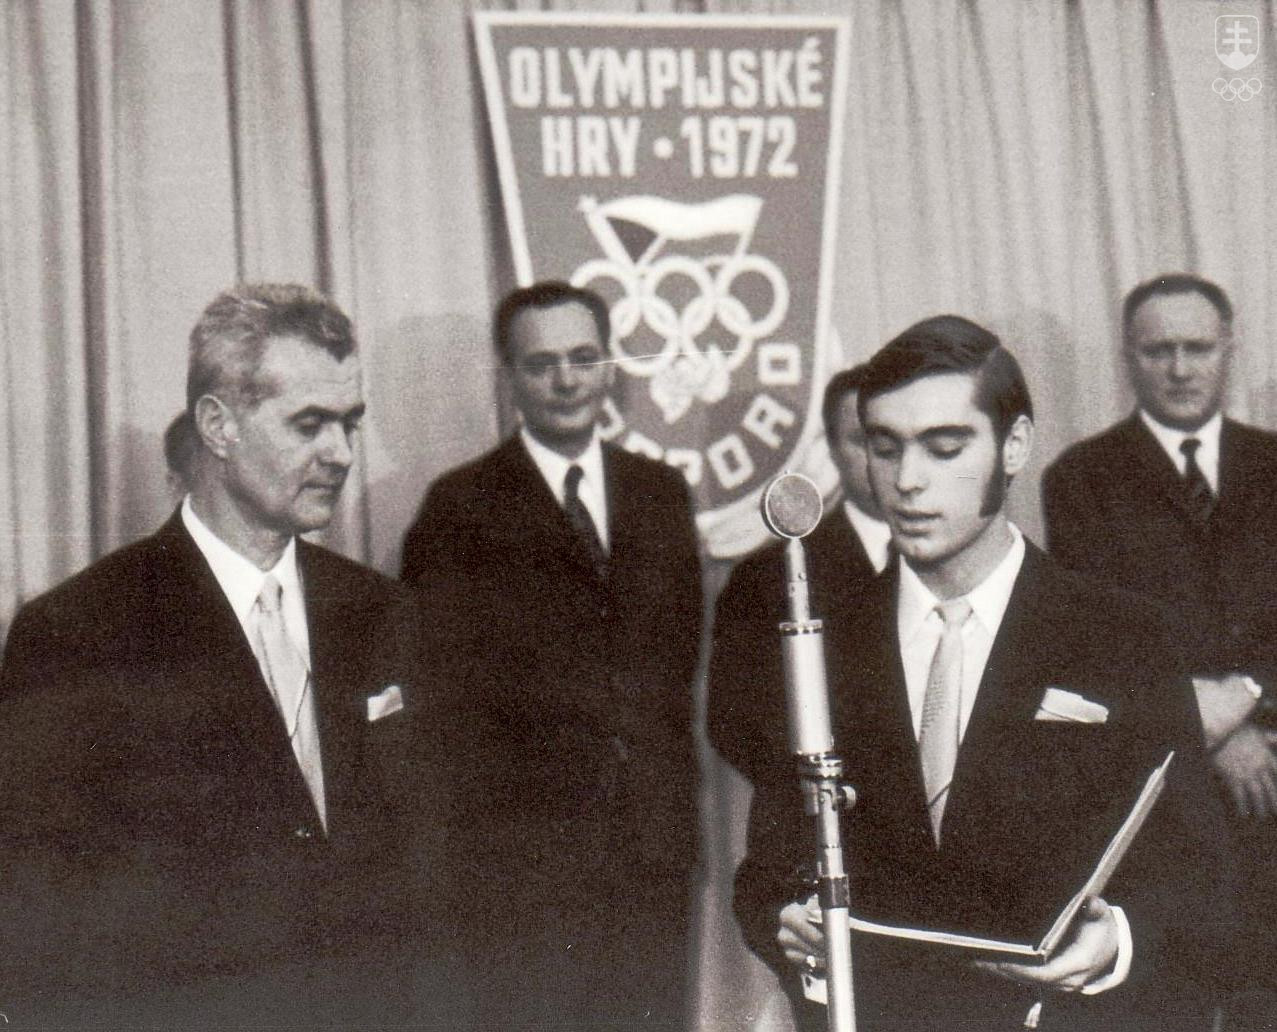 V roku 1972 Vladimír Černušák ako podpredseda ÚV ČSZTV viedol československú výpravu na ZOH v Sappore. Na fotografii z olympijského sľubu výpravy v Prahe stojí vedľa krasokorčuliara Ondreja Nepelu, ktorý si v Sappore vybojoval zlatú medailu.